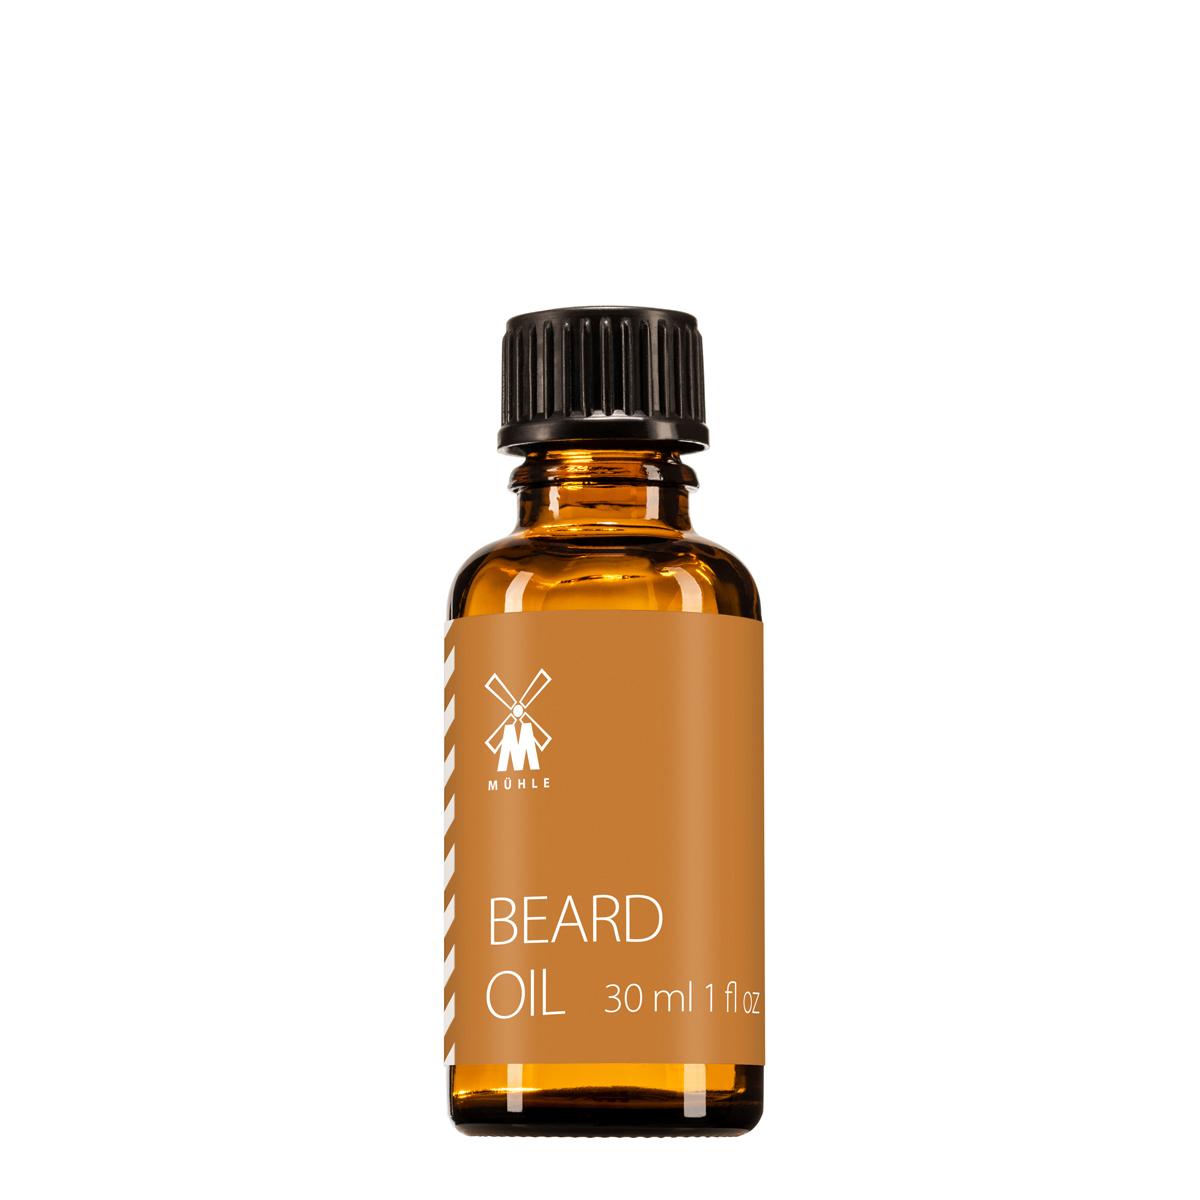 MUHLE Beard Oil, 30ml